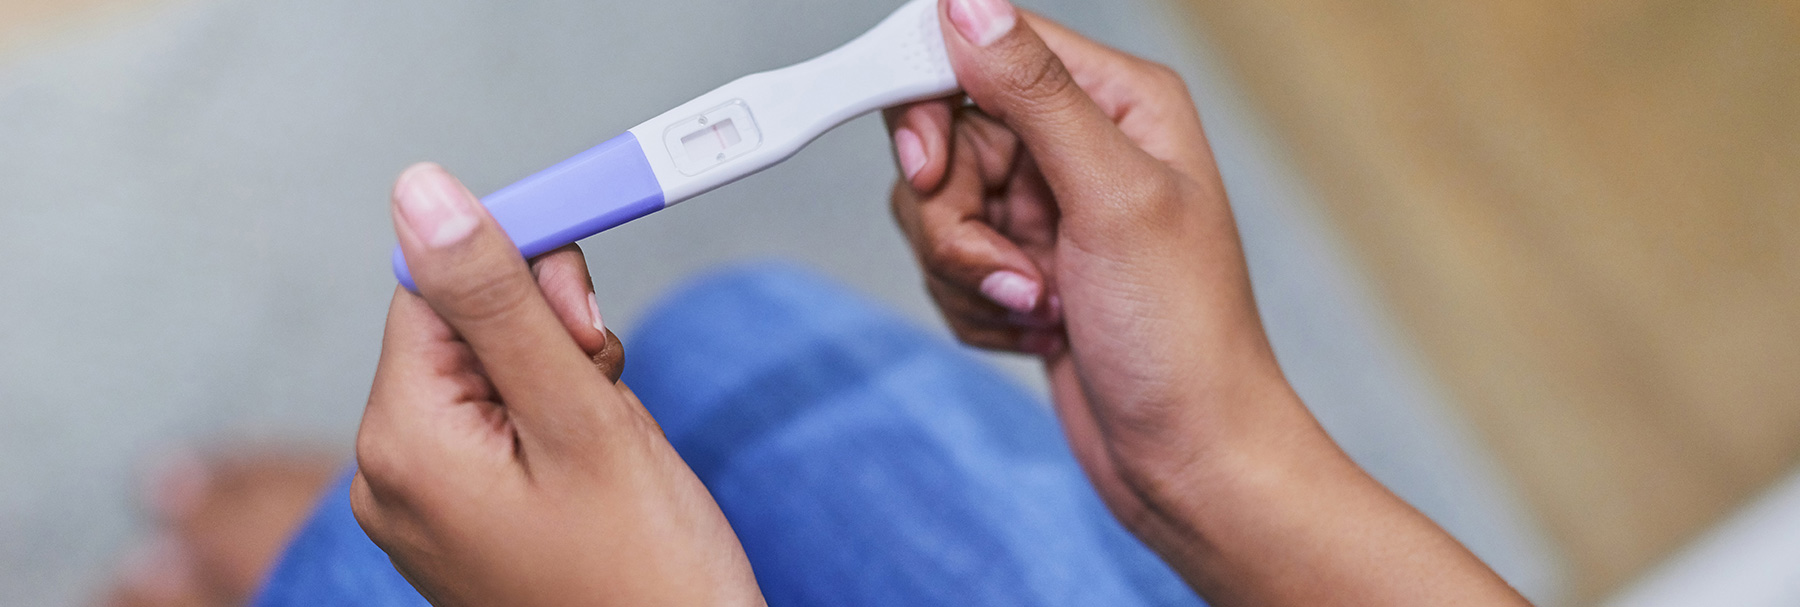 Test de embarazo: ¿cómo funcionan?¿son fiables?